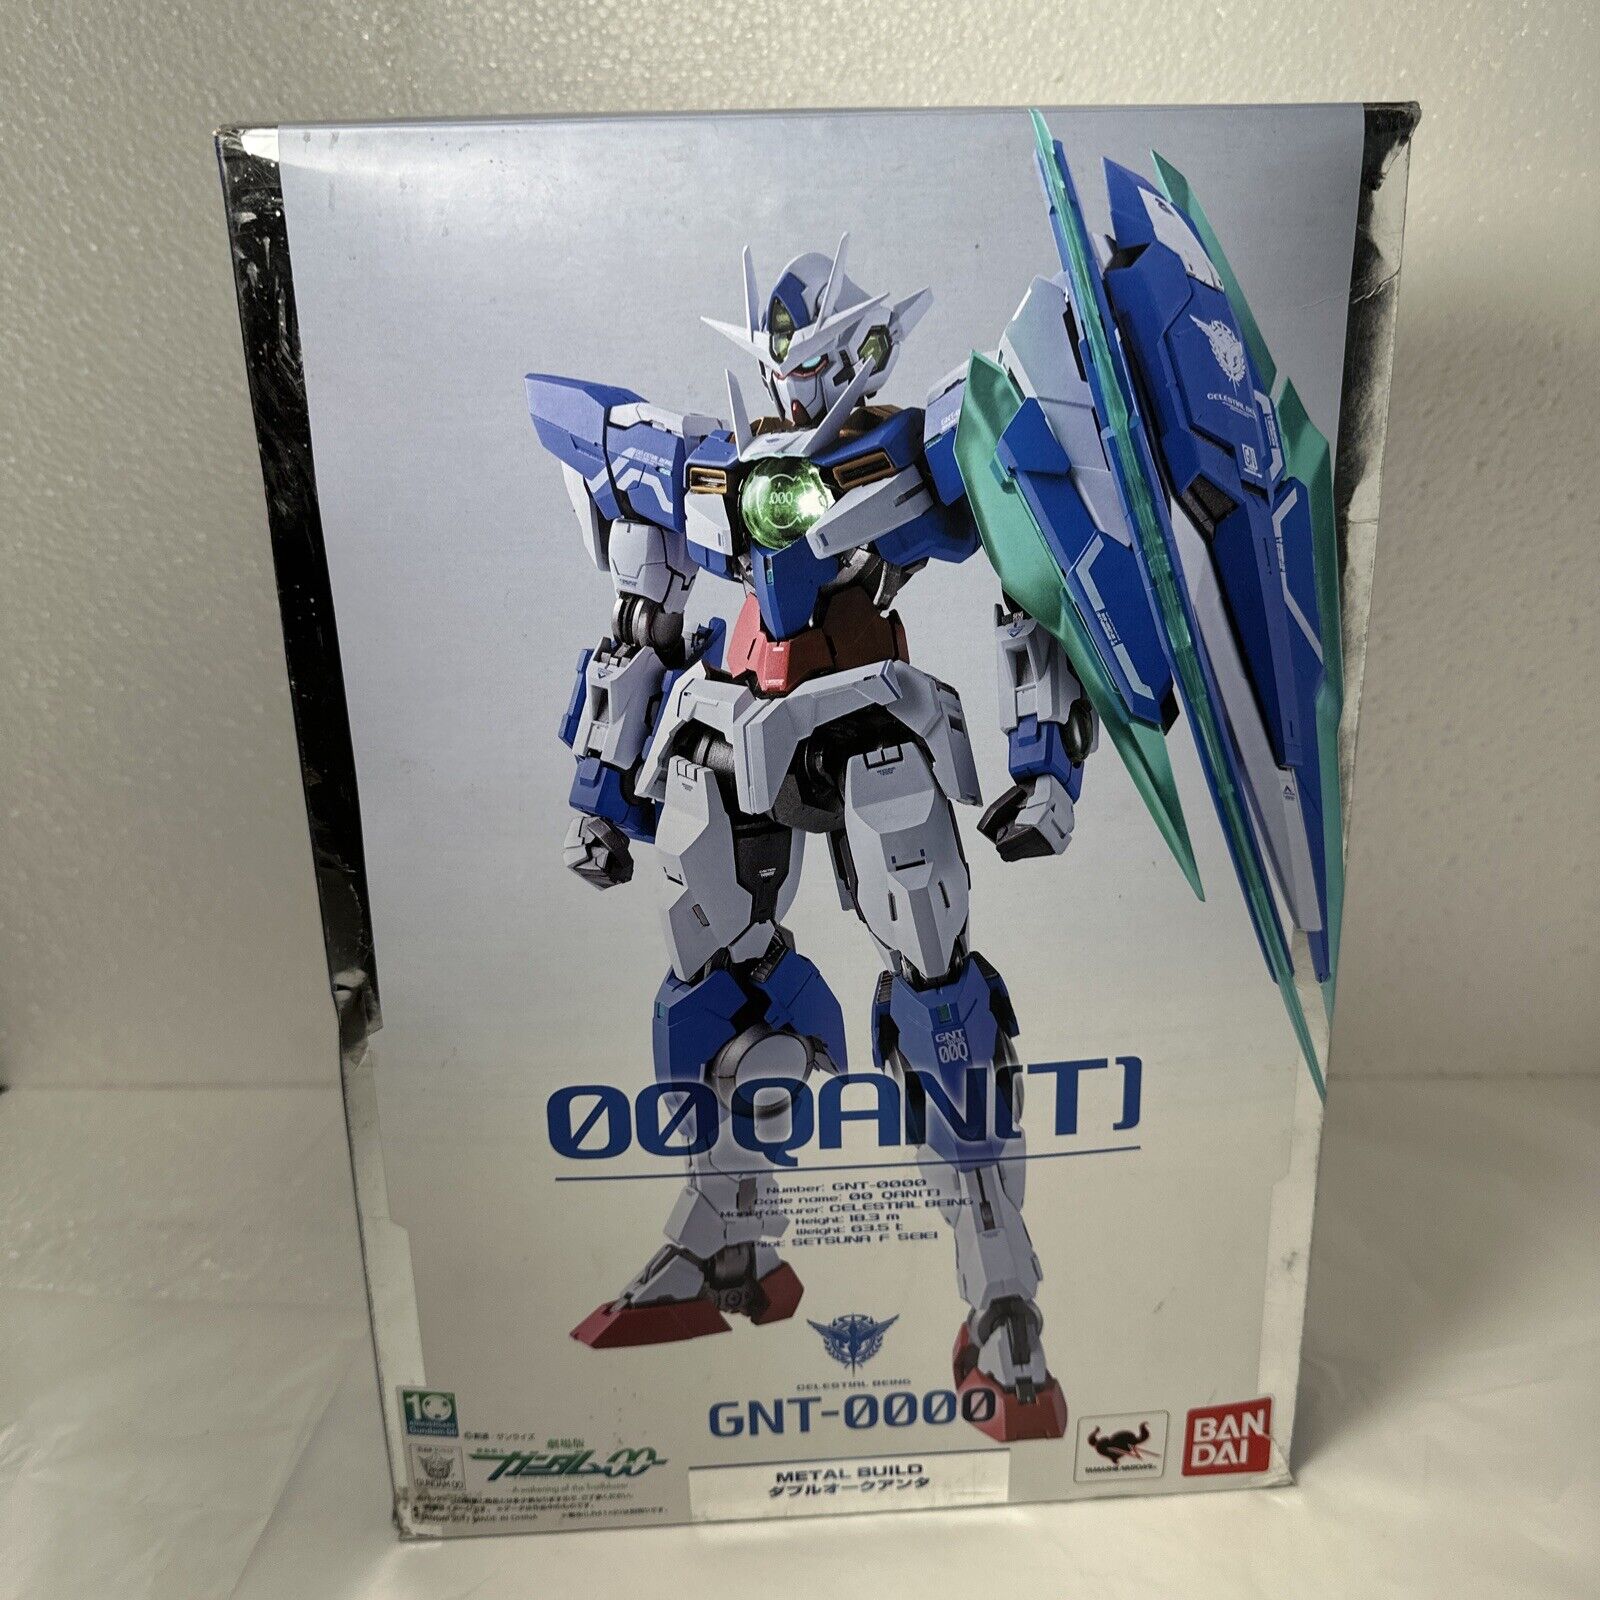 Bandai METAL BUILD Mobile Suit Gundam GNT-0000 00 Qan[T] Open Box Complete